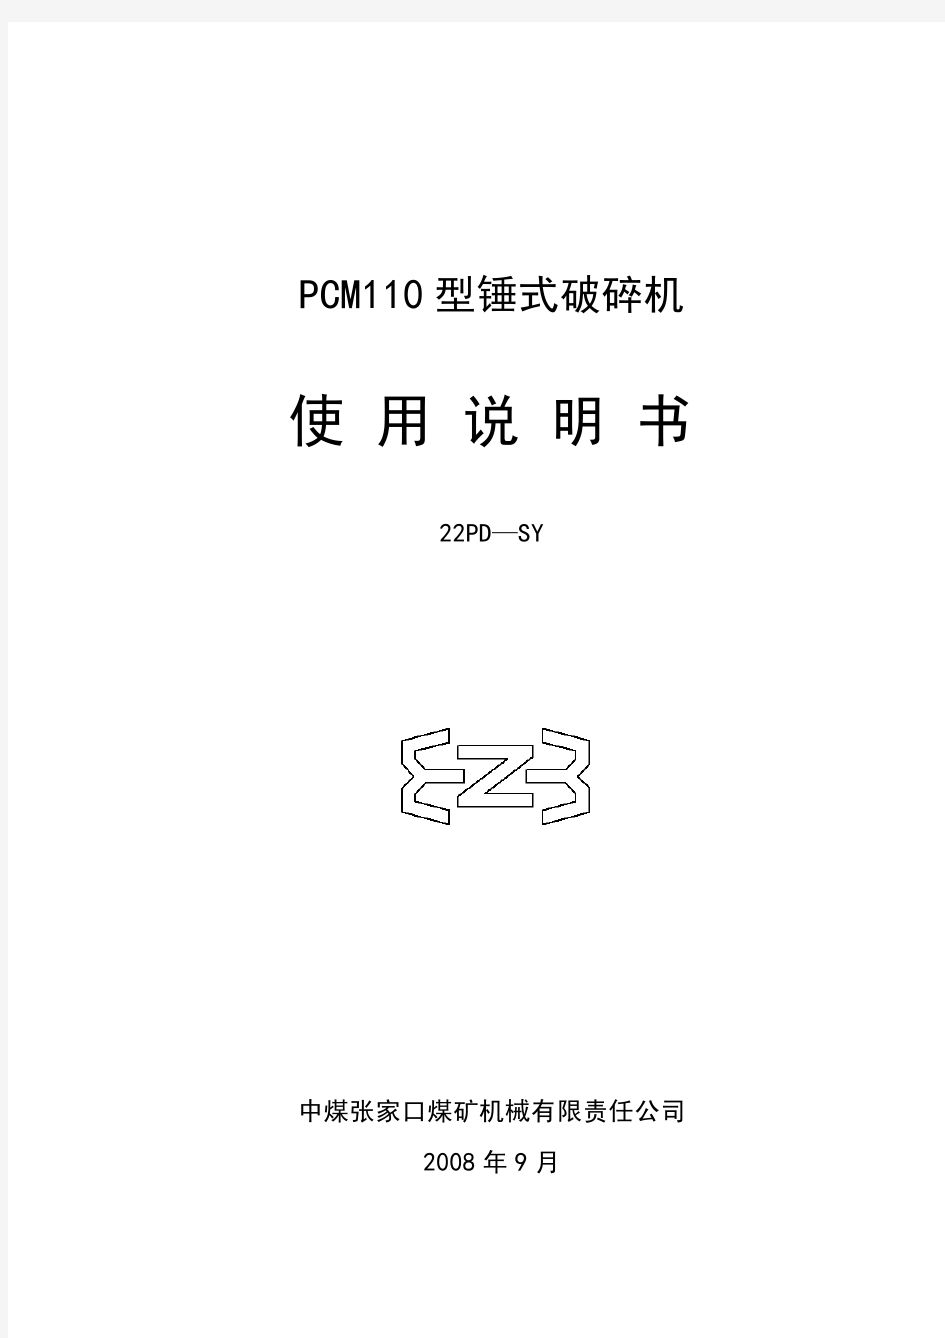 pcm-110破碎机说明书